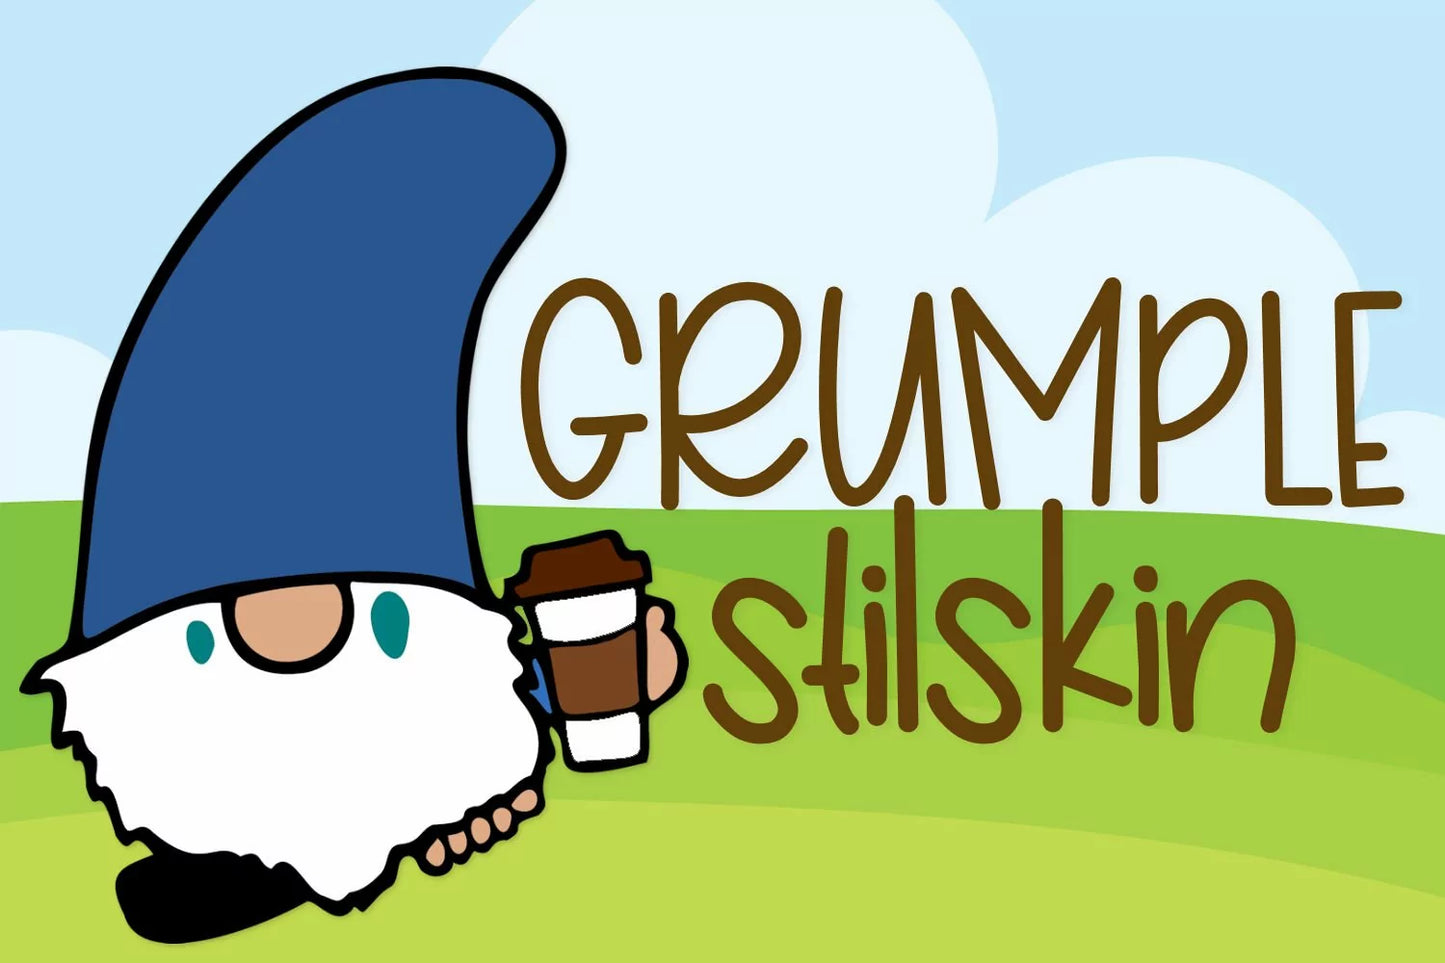 Grumplestilskin - A Handwritten Font